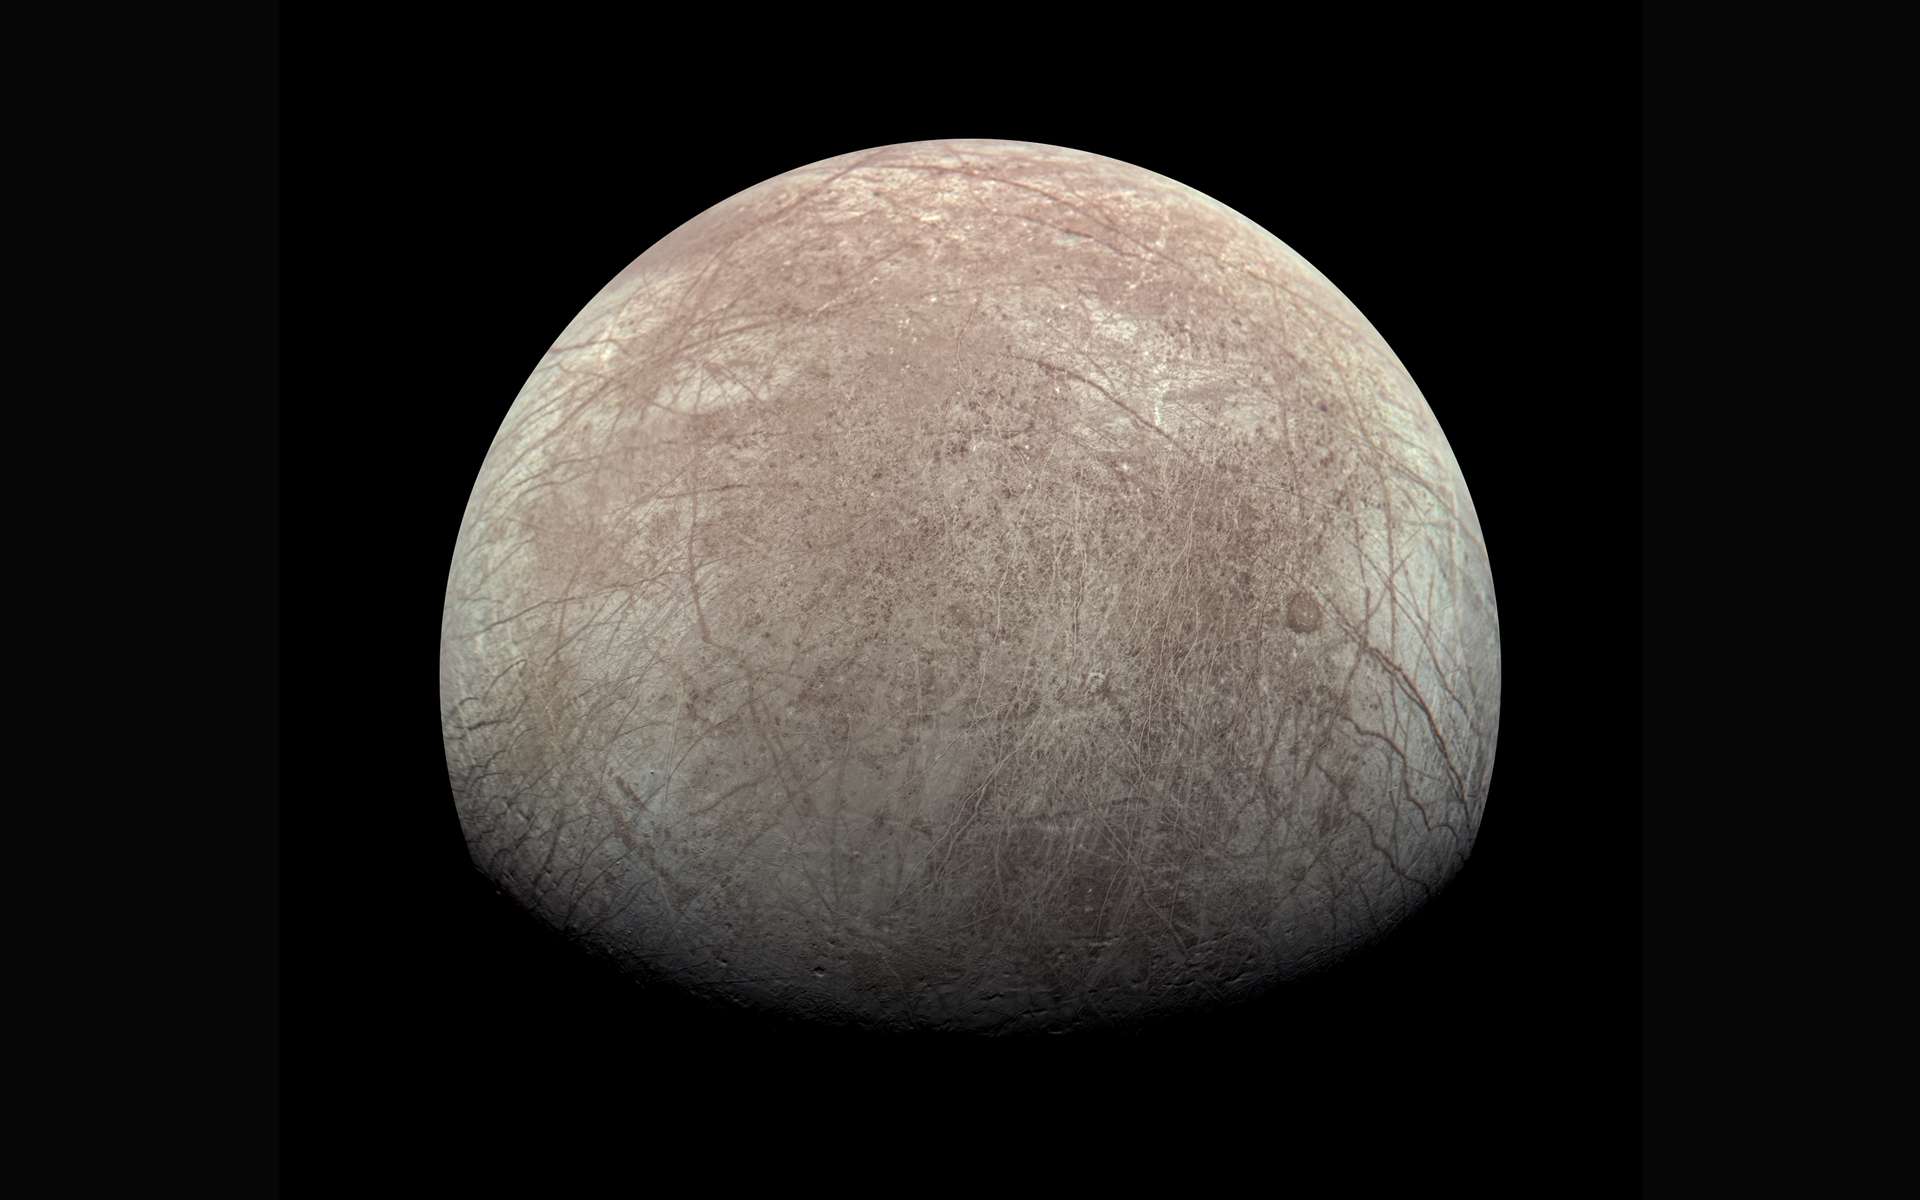 Des remontées d'eau salée auraient façonné ces reliefs sur une lune de Jupiter !